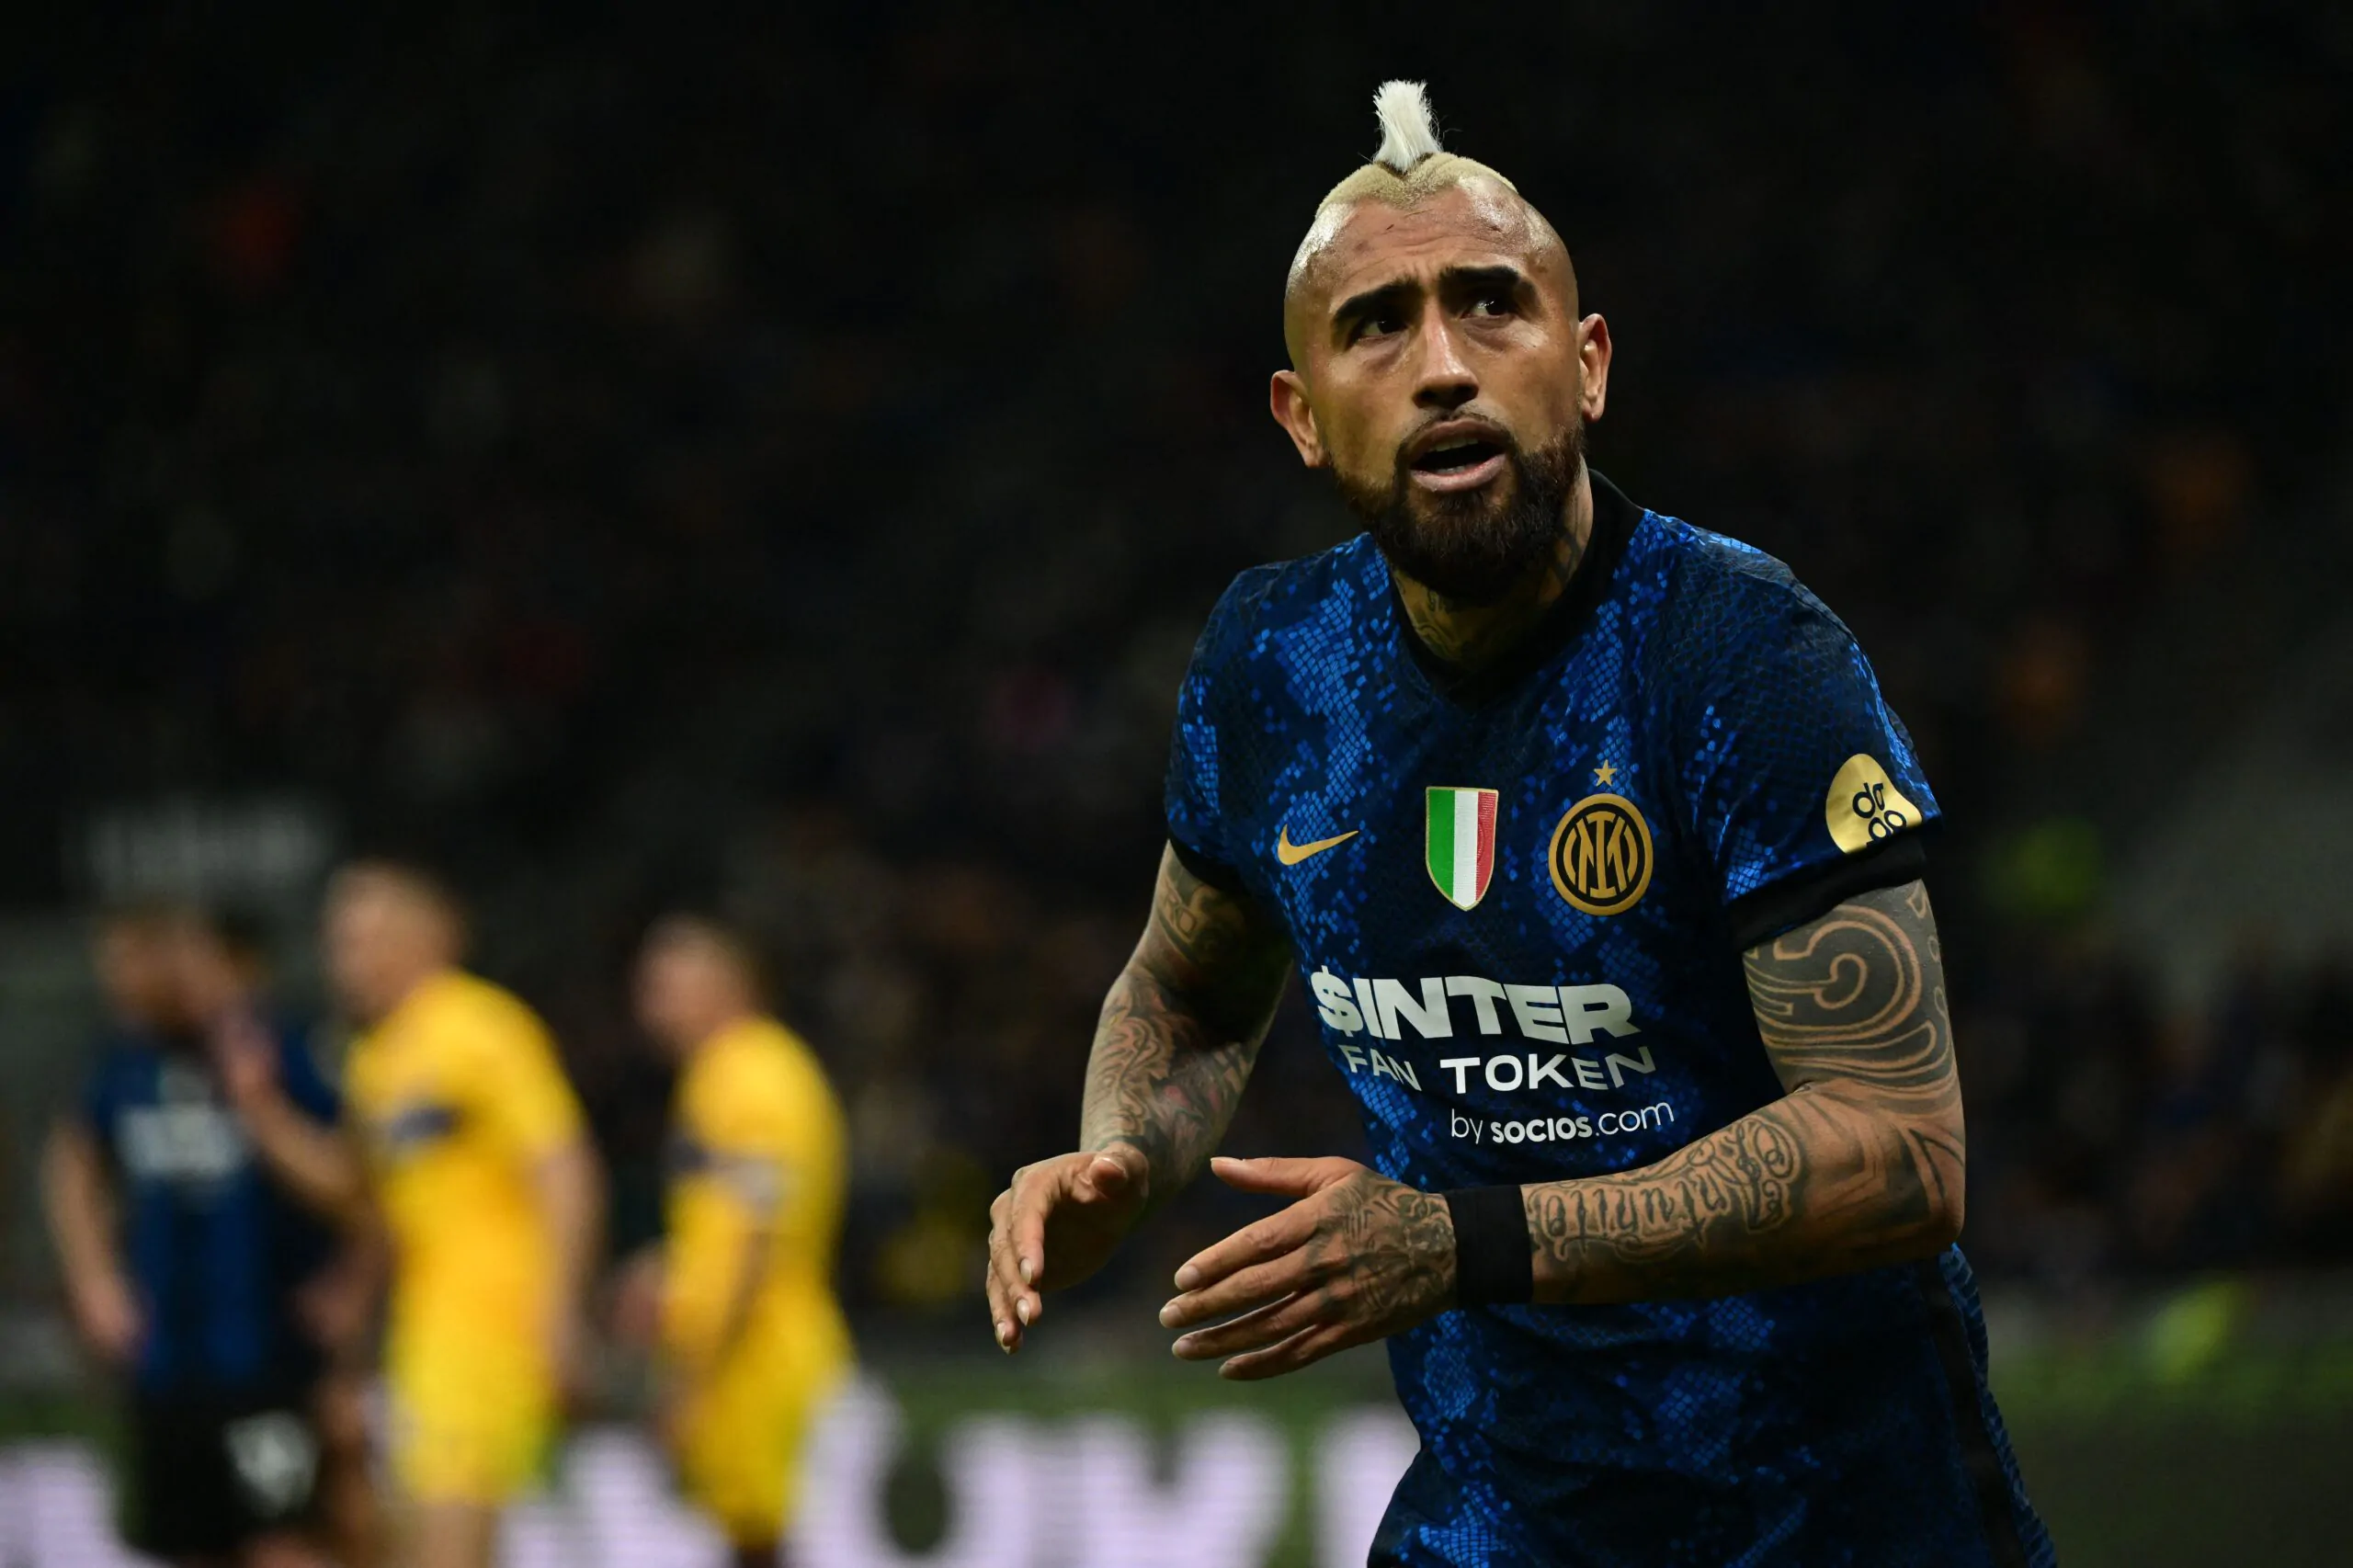 Calciomercato Inter, ricca offerta per Vidal: la proposta dalla Turchia